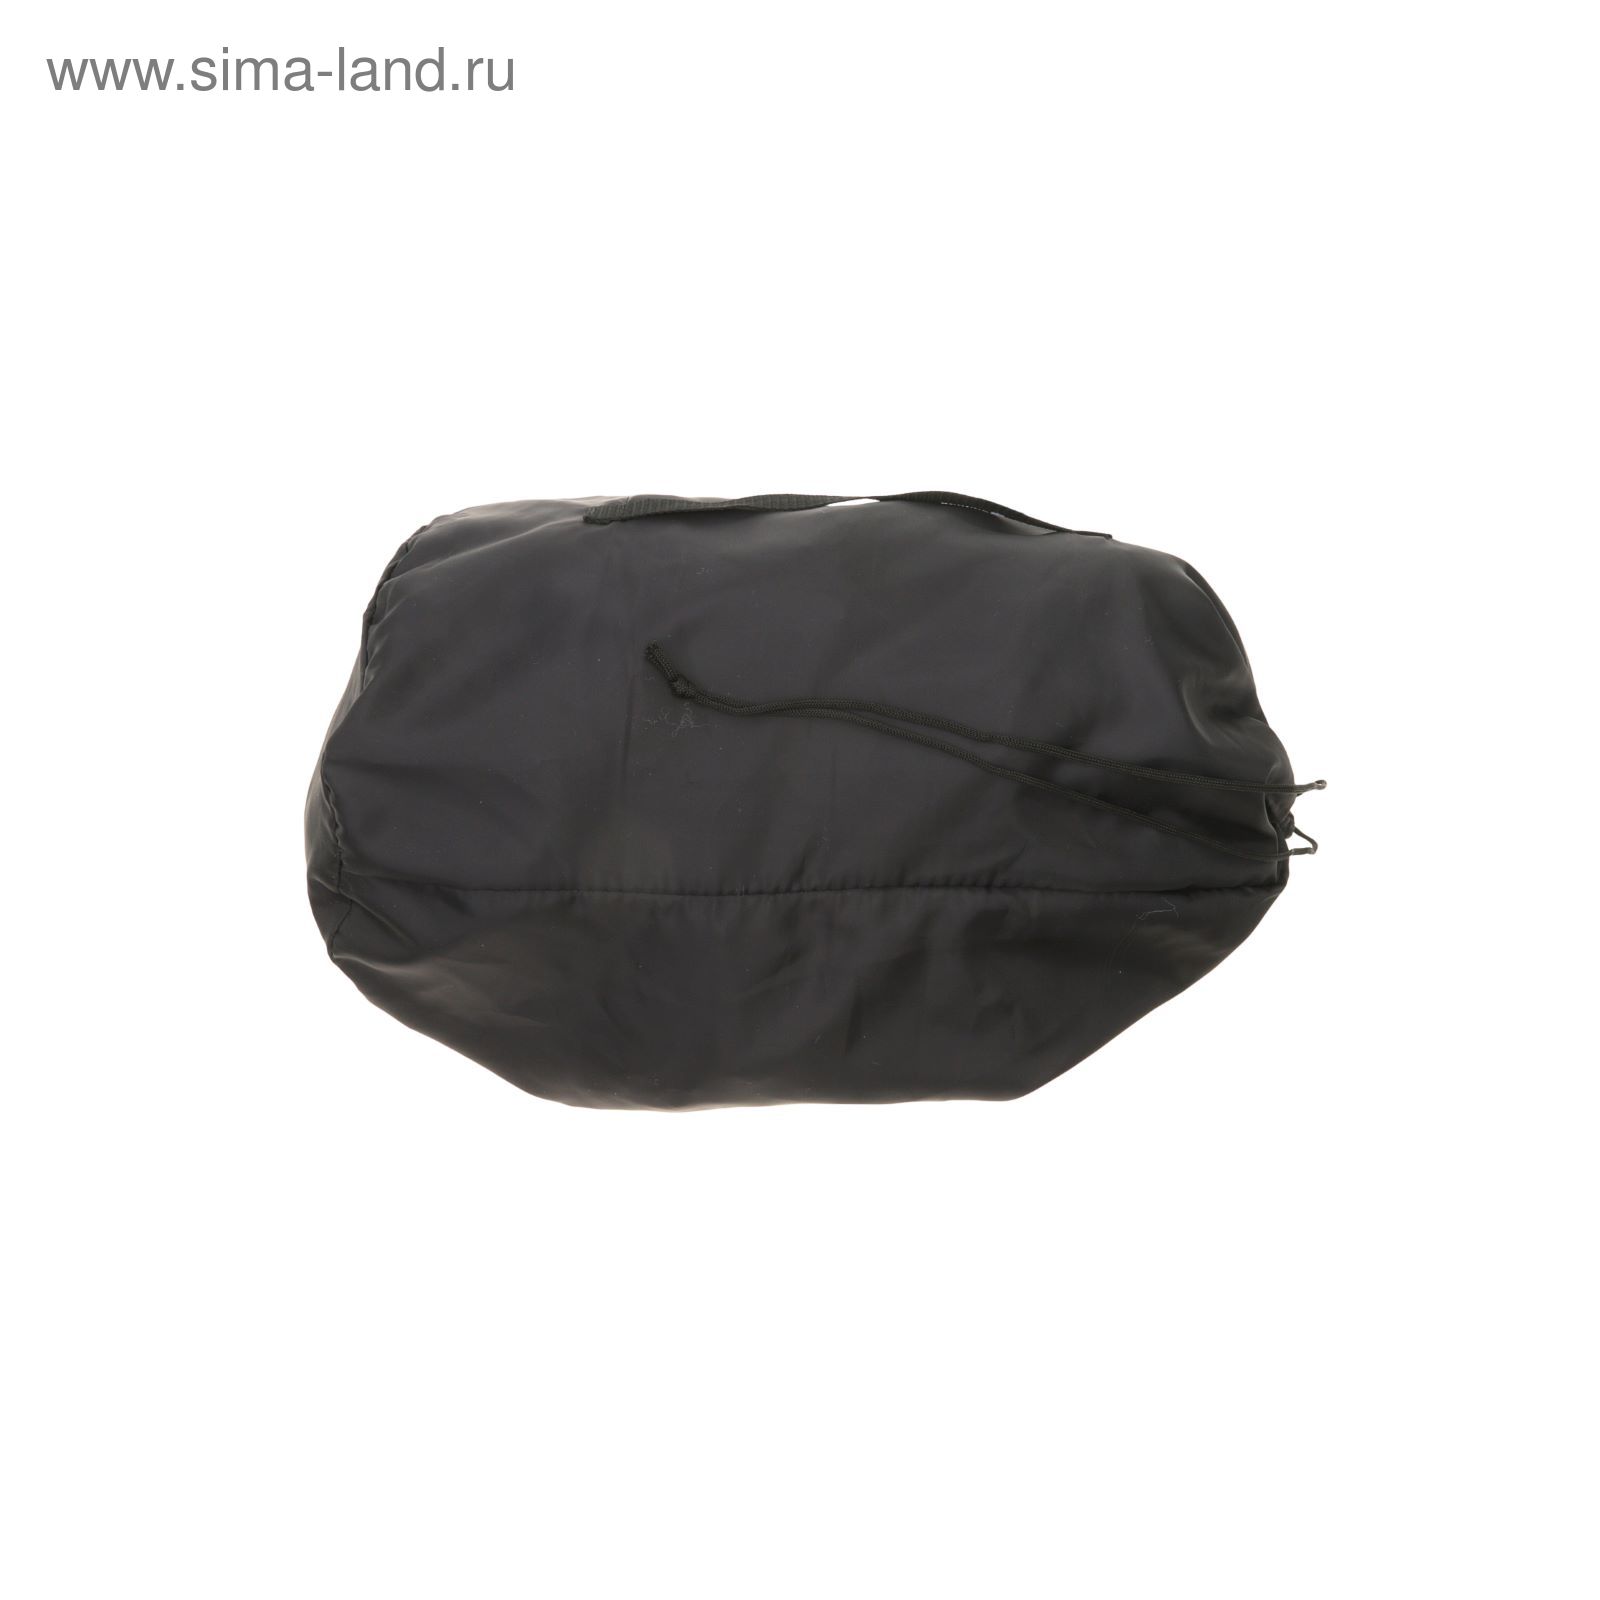 Спальный мешок "Эконом+", 4-х слойный, размер 225 х 70 см